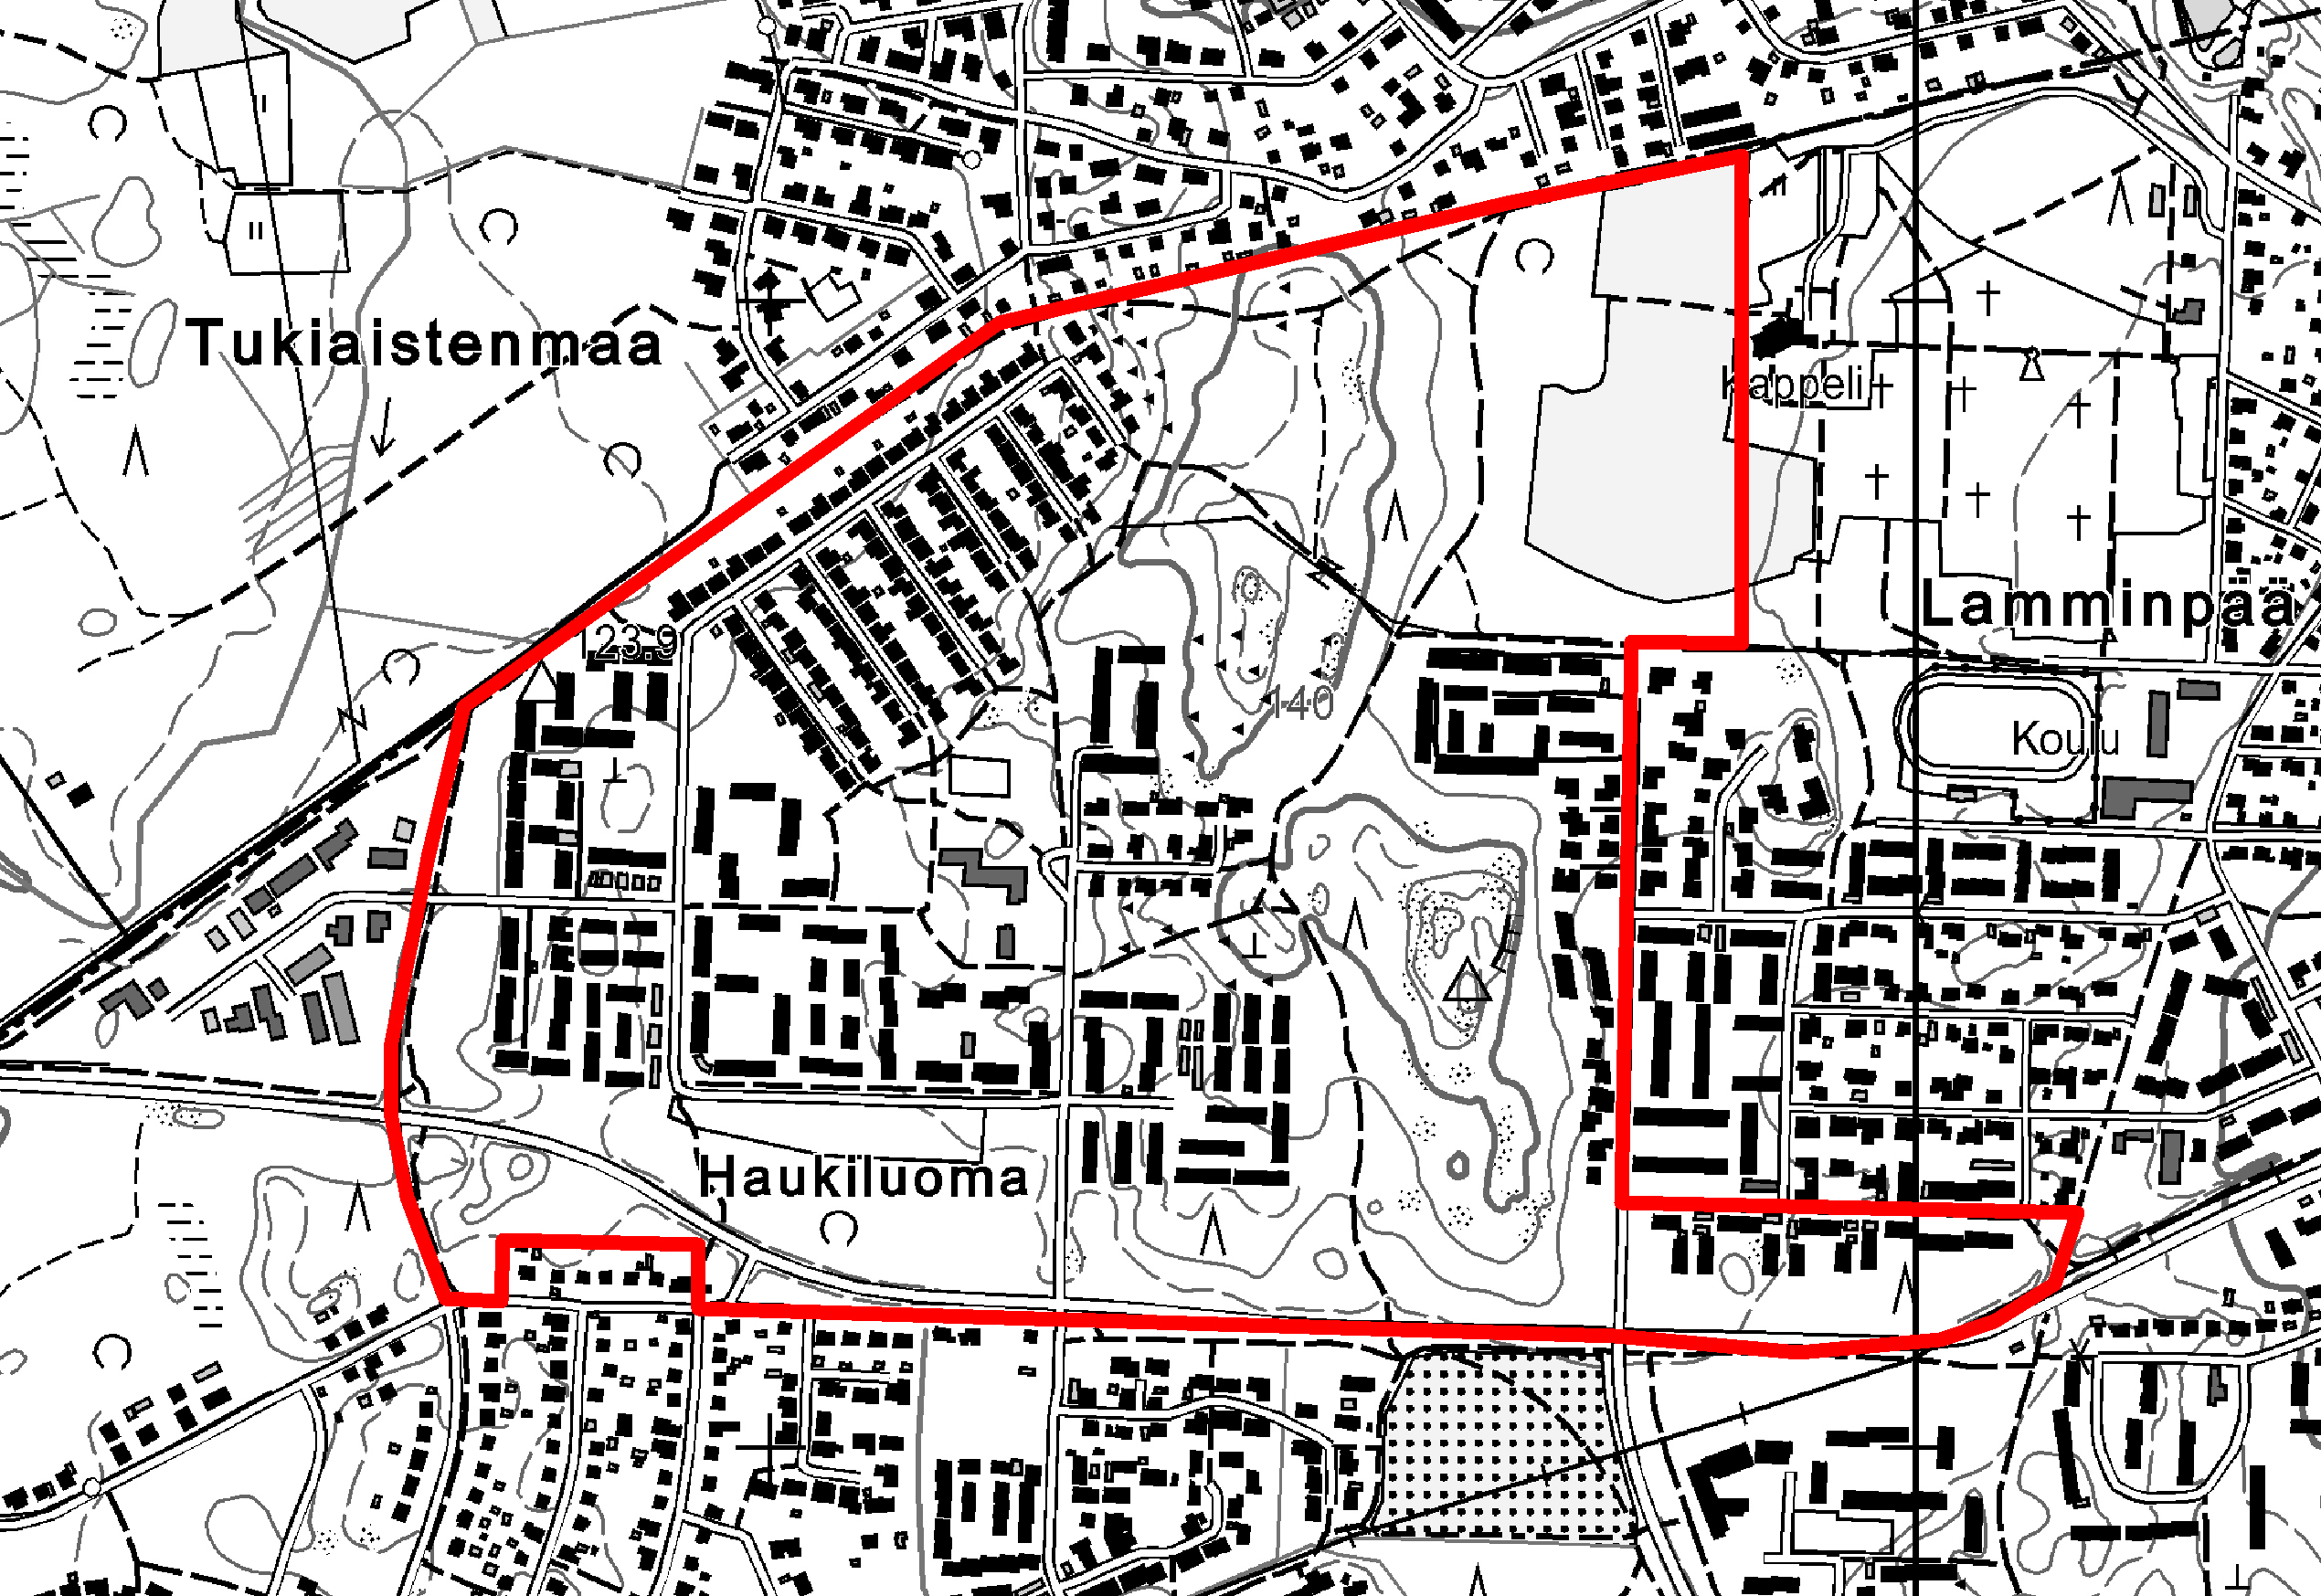 5. Suunnittelualue Haukiluoman yleissuunnitelma-alue sijaitsee kantakaupungin luoteisosassa noin 10 km etäisyydellä kaupungin keskustasta. Suunnittelualueen pinta-ala on noin 38 hehtaaria.